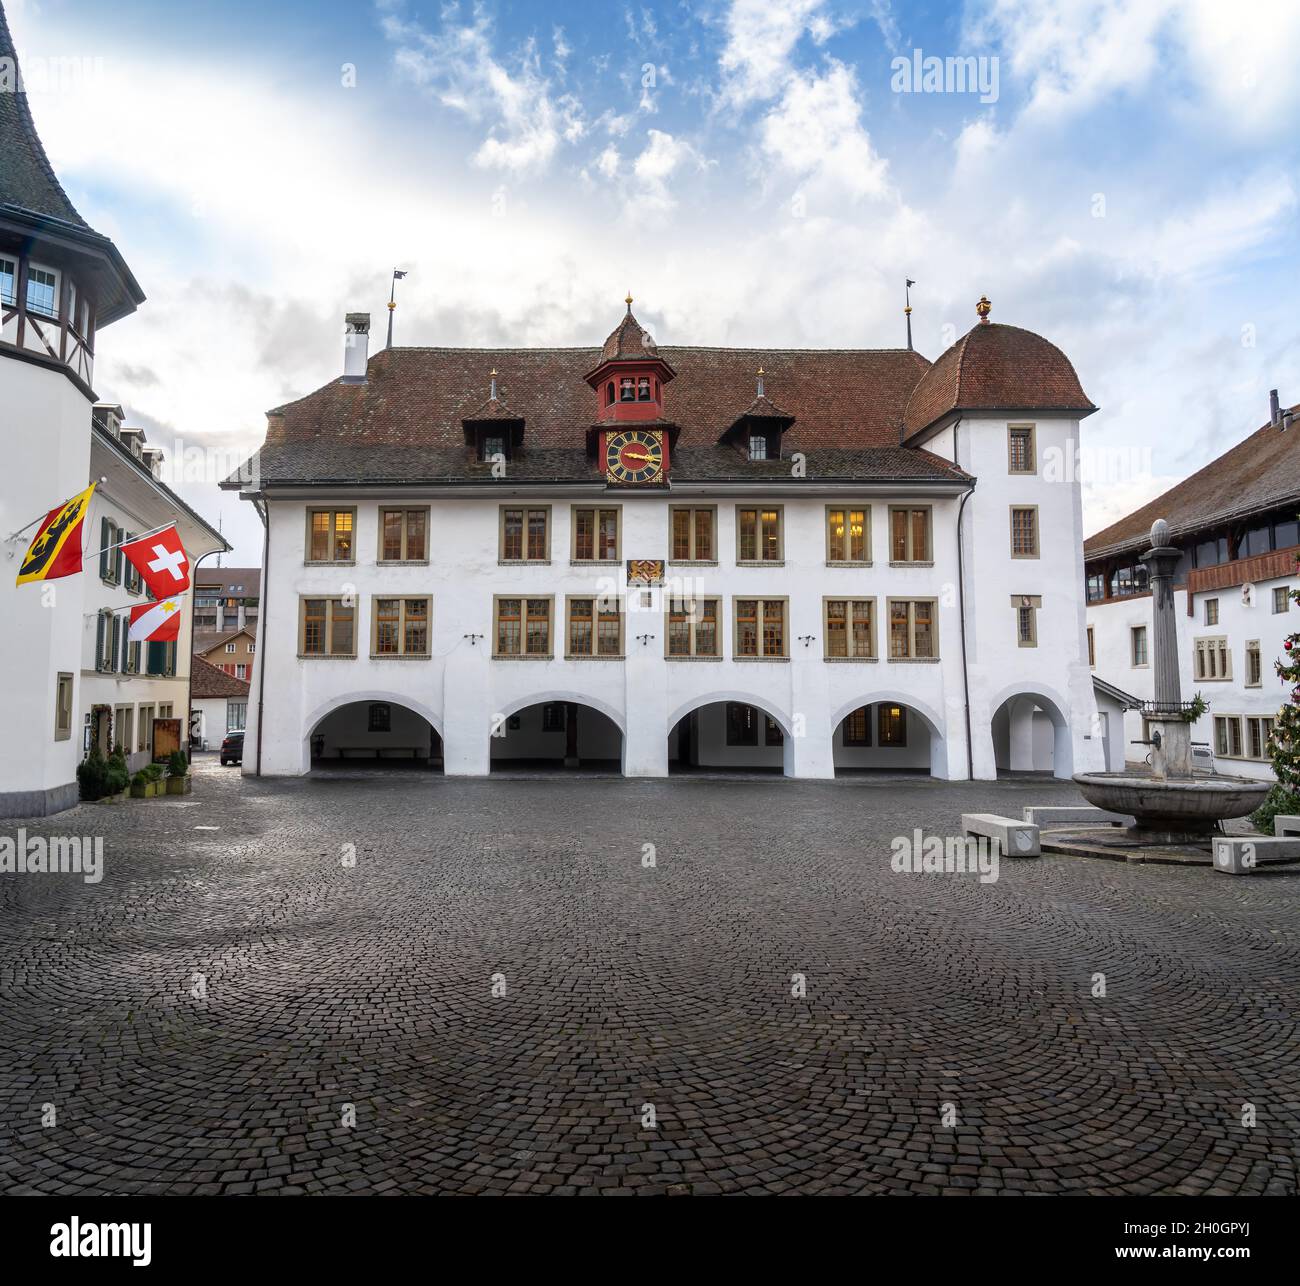 Hôtel de ville (Rathaus) à la place de l'Hôtel de ville (Rathausplatz) - Thun, Suisse Banque D'Images